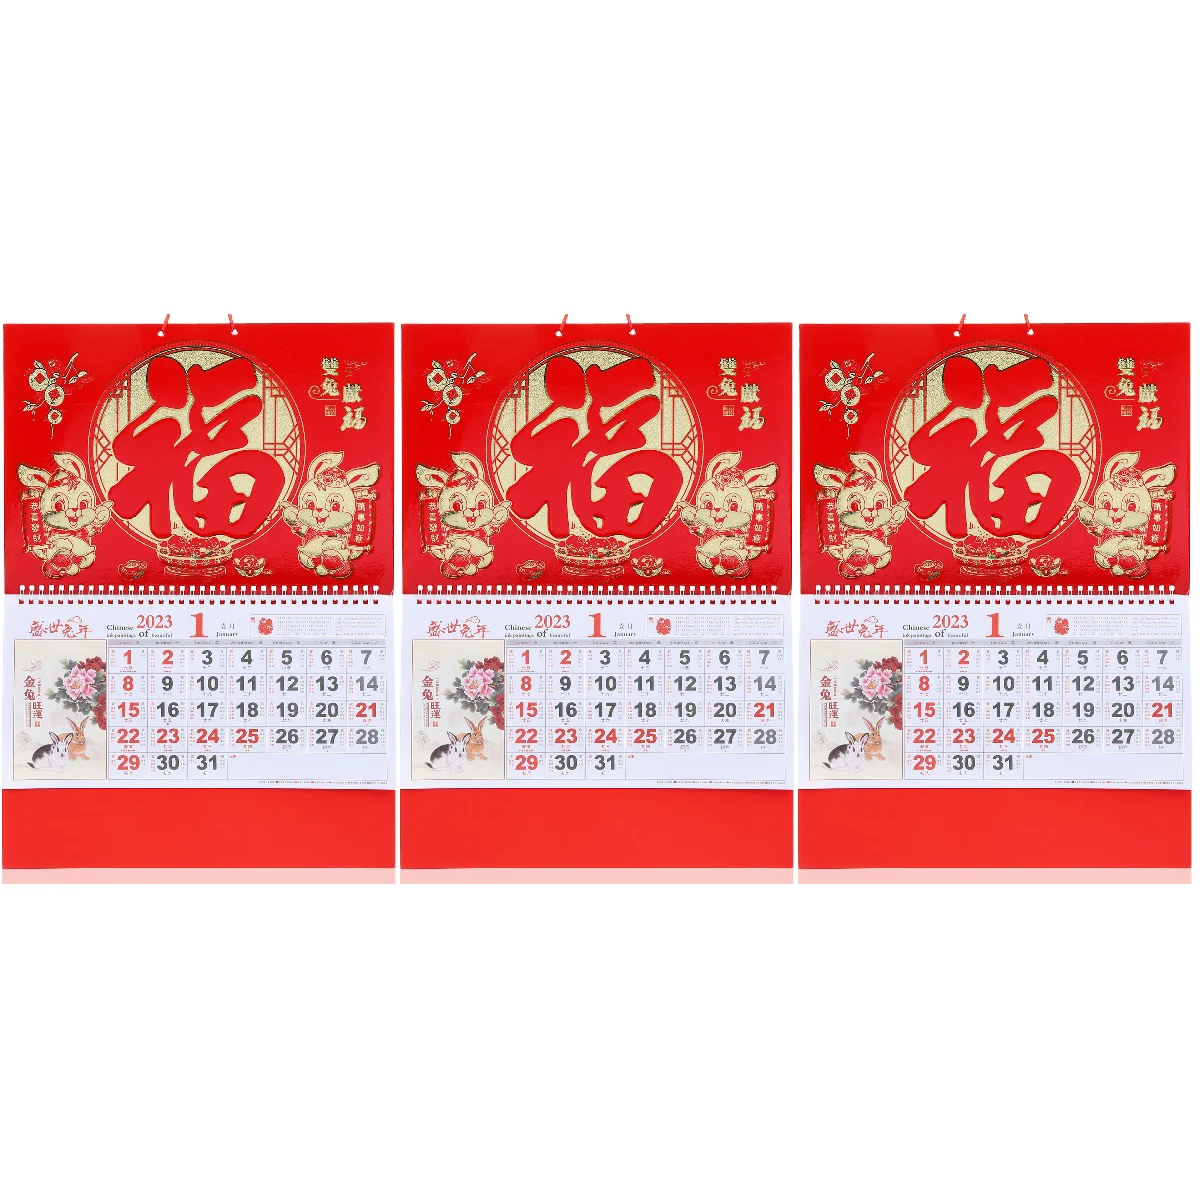 Календарь на китайский новый год 2023, подвесной календарь на китайском языке, календарь на китайском языке 2023, подвесной календарь на китайс...